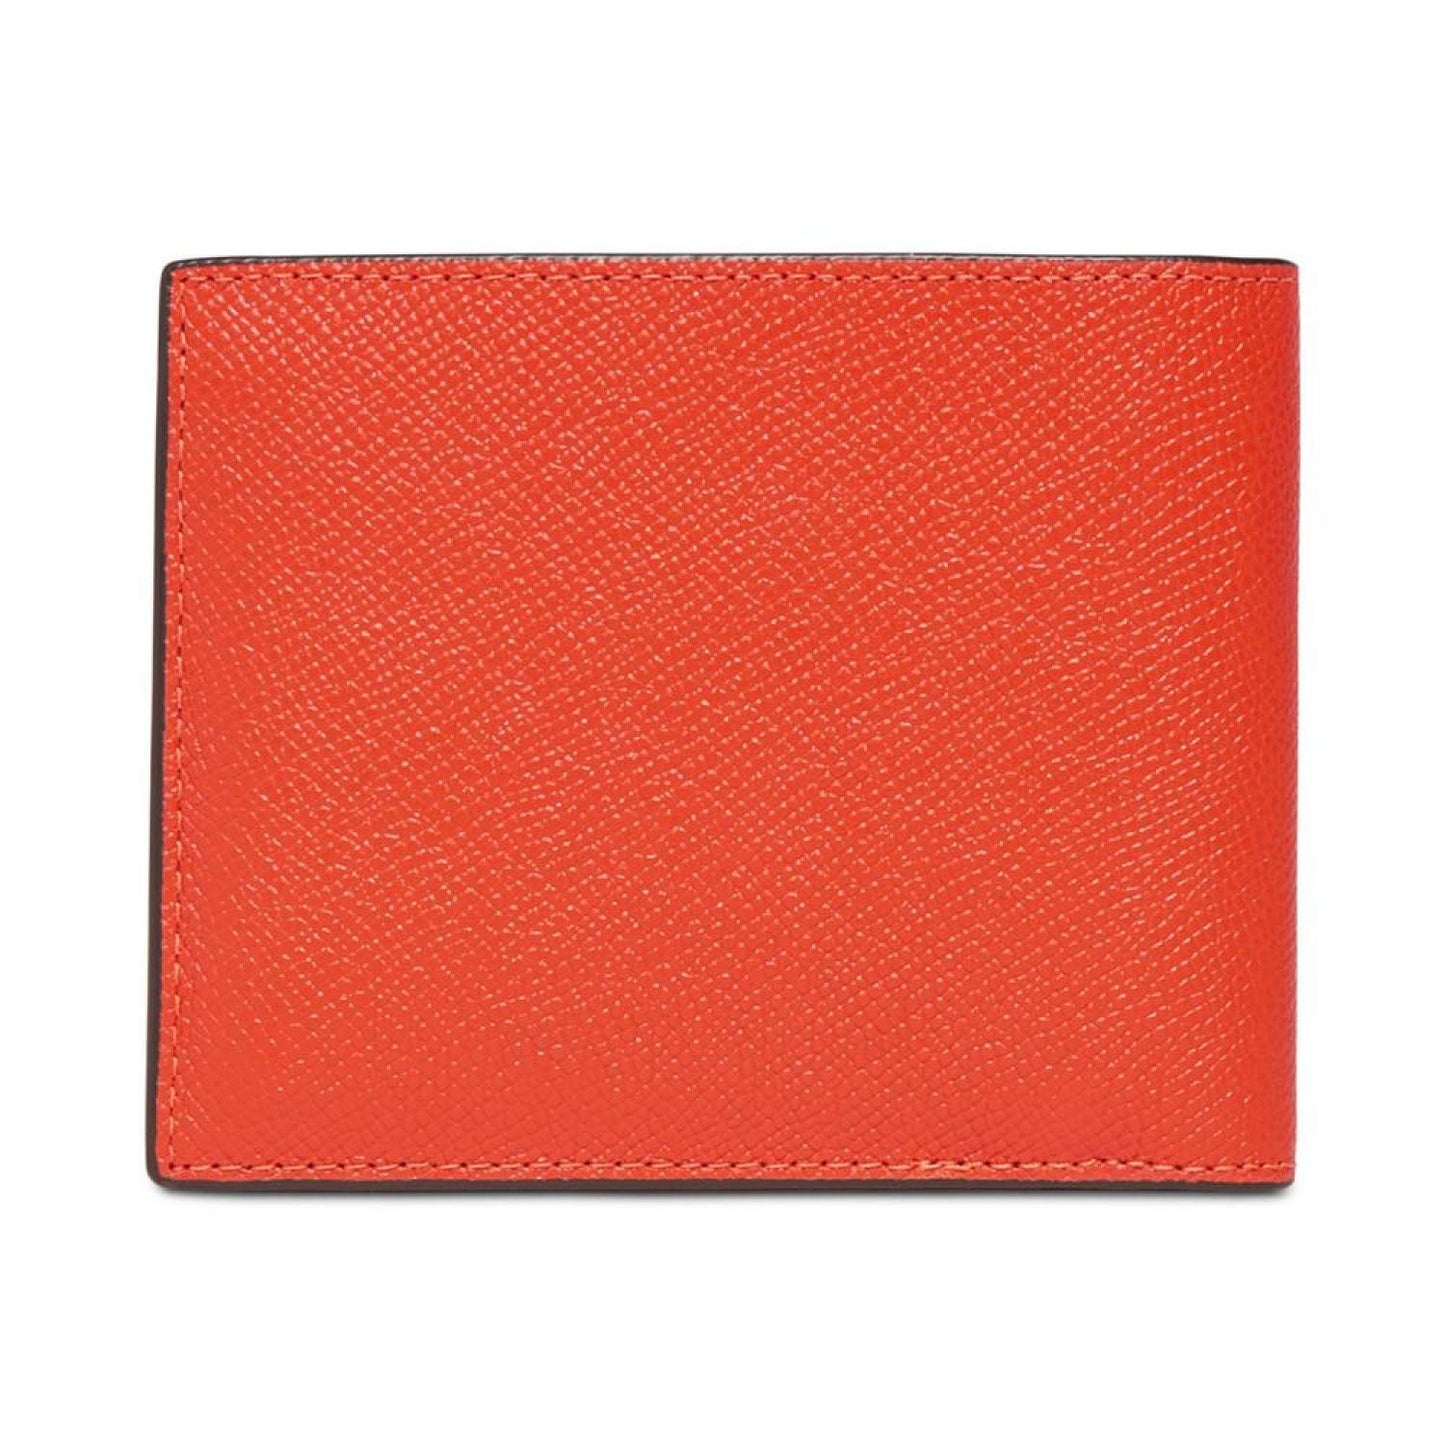 3 in 1 Wallet in Crossgrain Leather